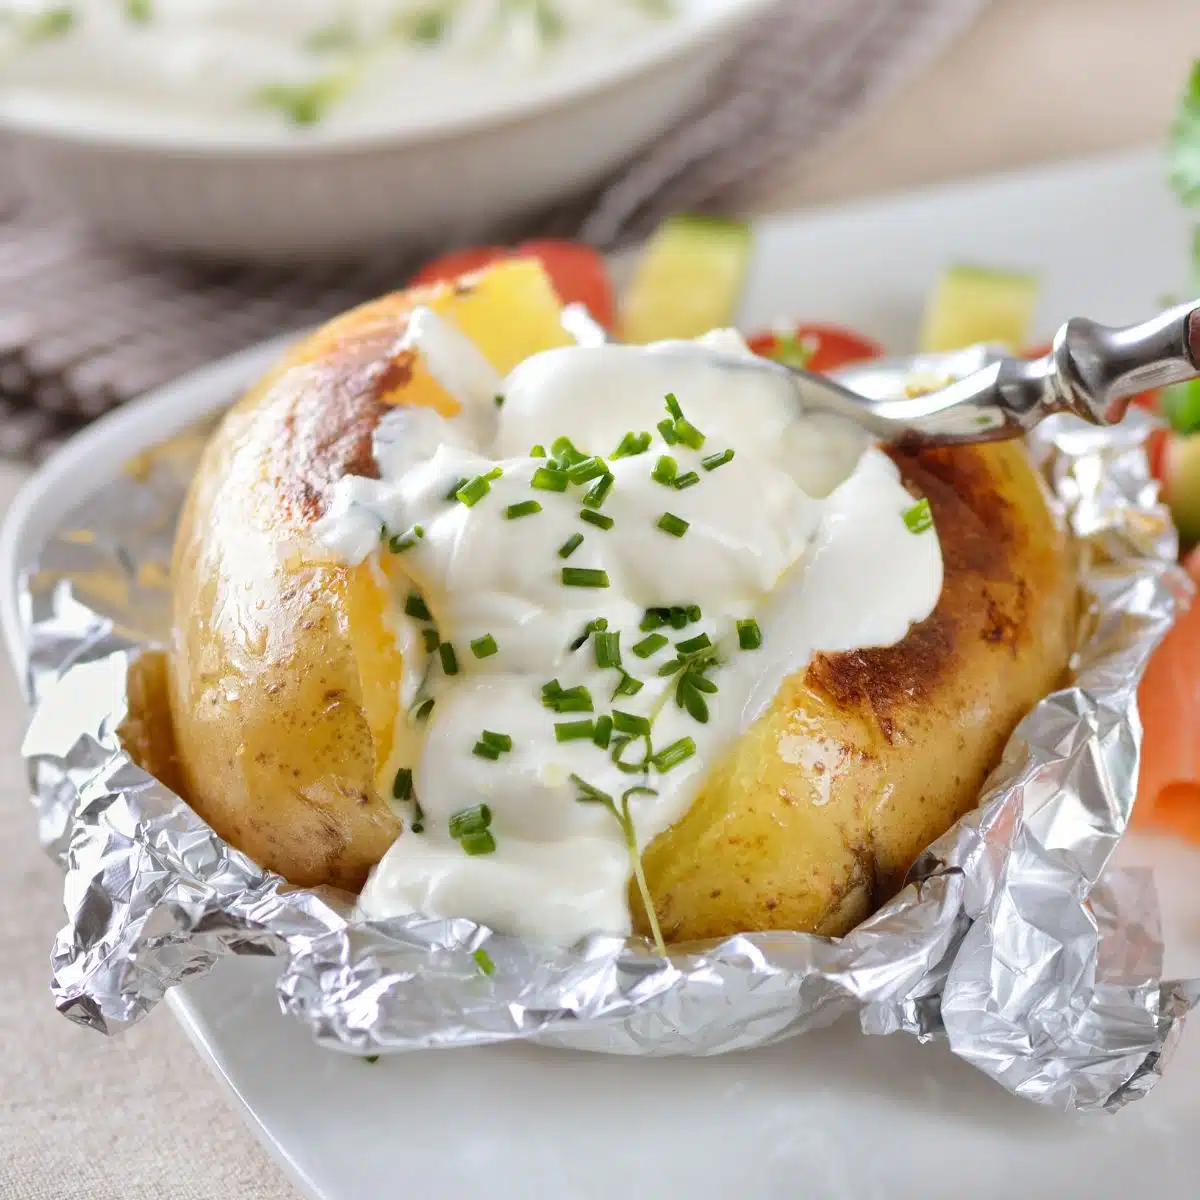 Čtvercový obrázek zobrazující pečené brambory na bílém talíři se zakysanou smetanou a pažitkou.